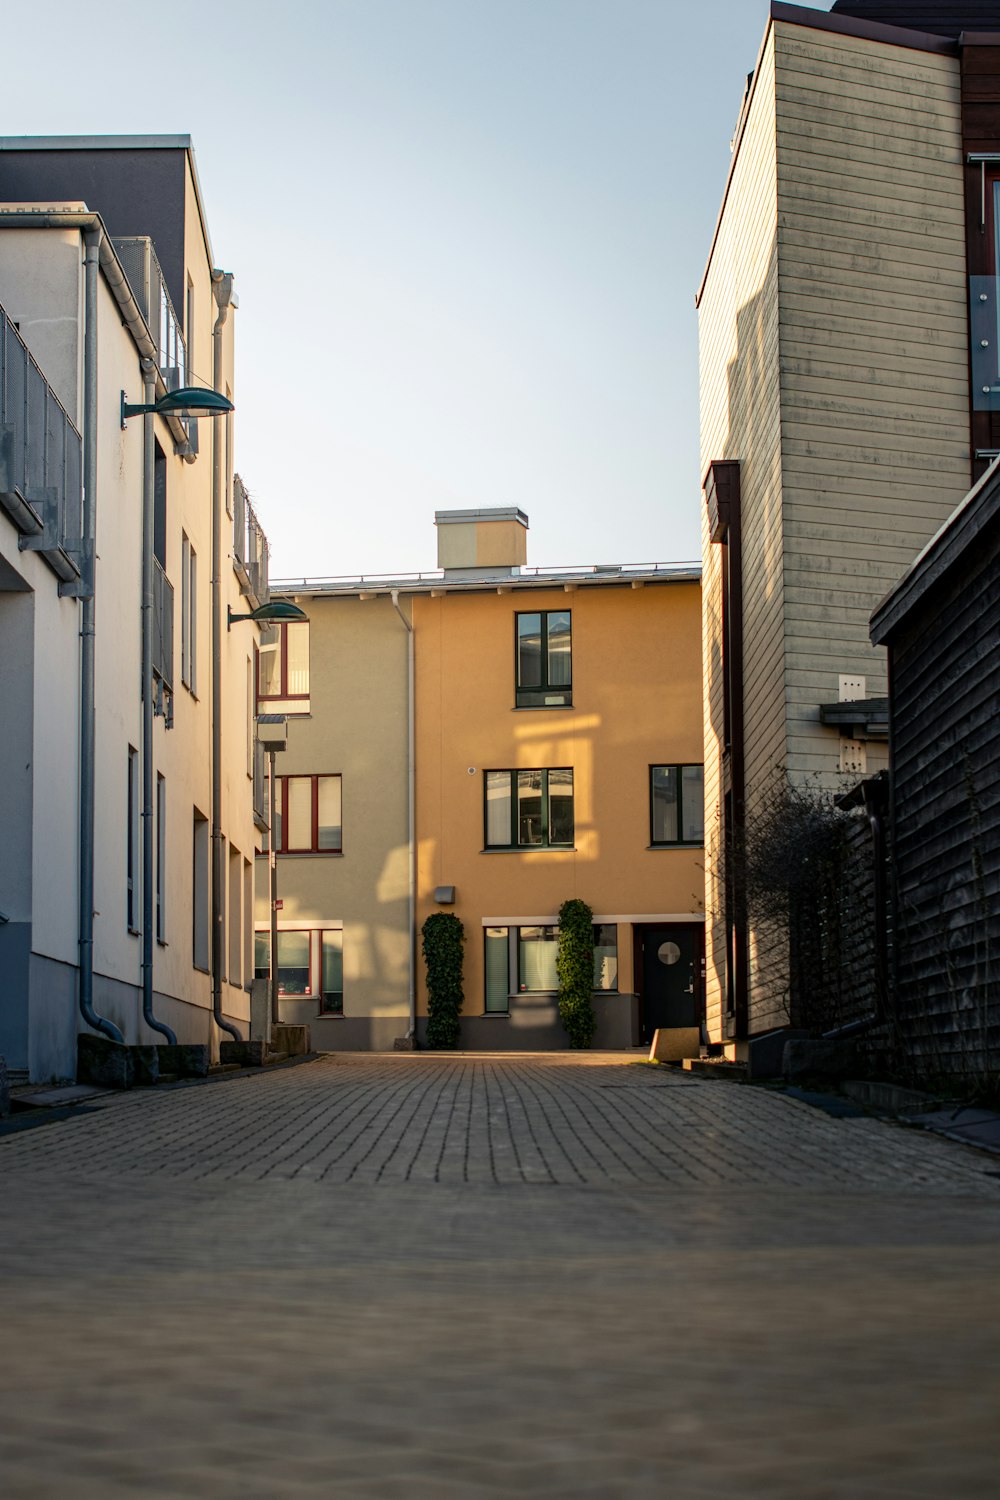 Edificio de hormigón blanco y marrón durante el día